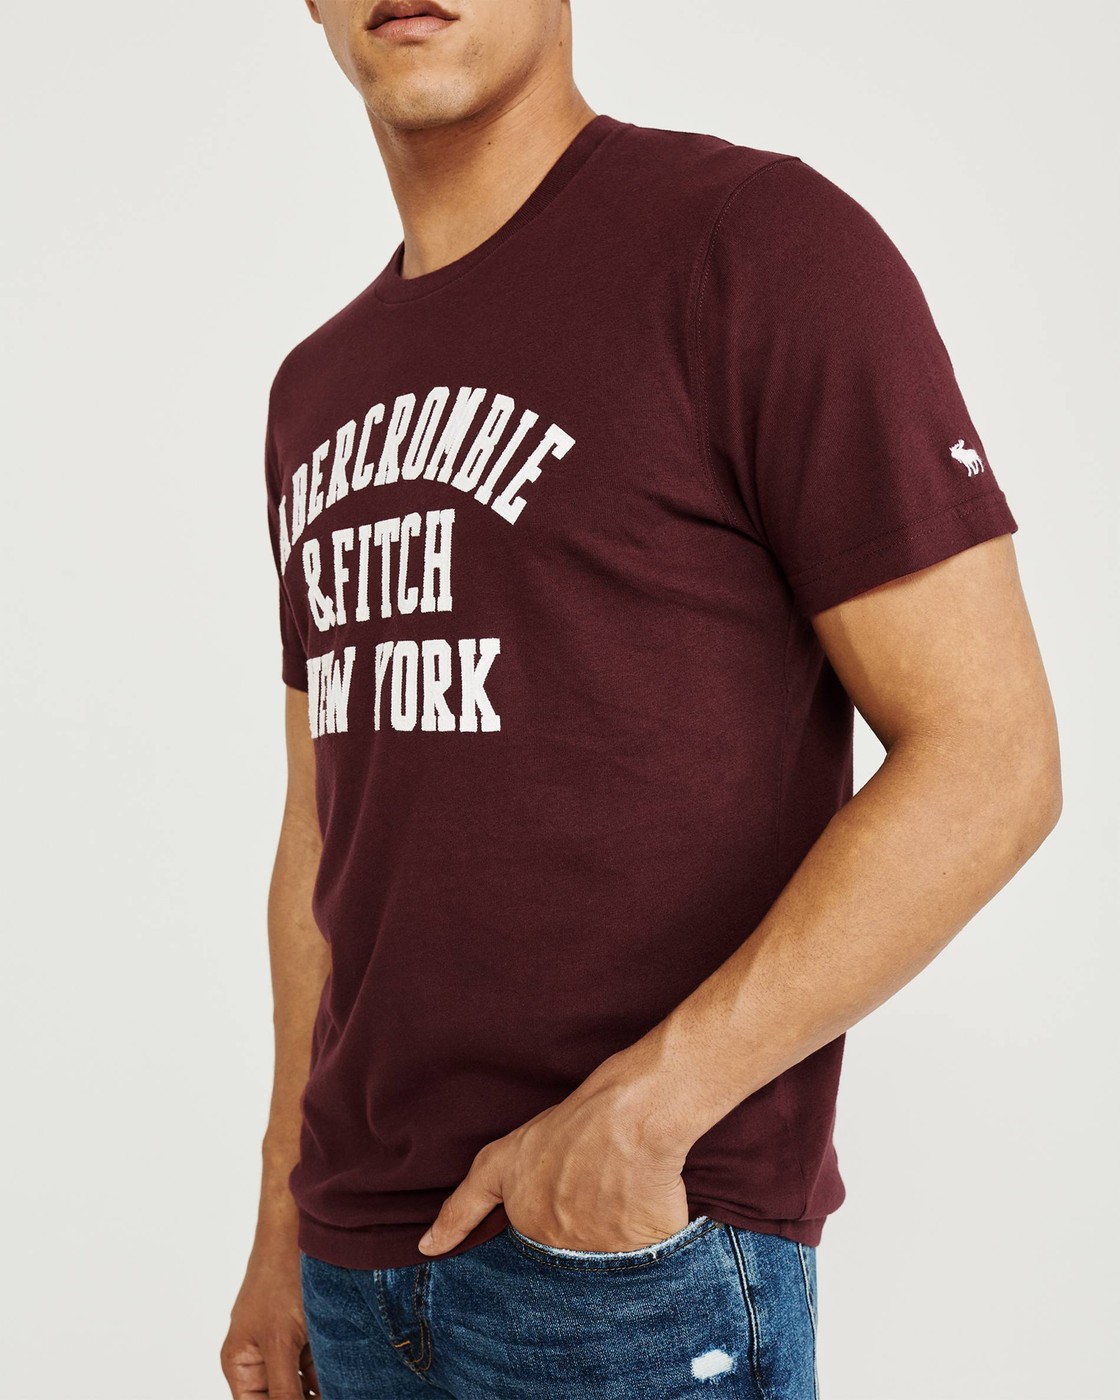 Бордовая футболка - мужская футболка Abercrombie & Fitch, L, L